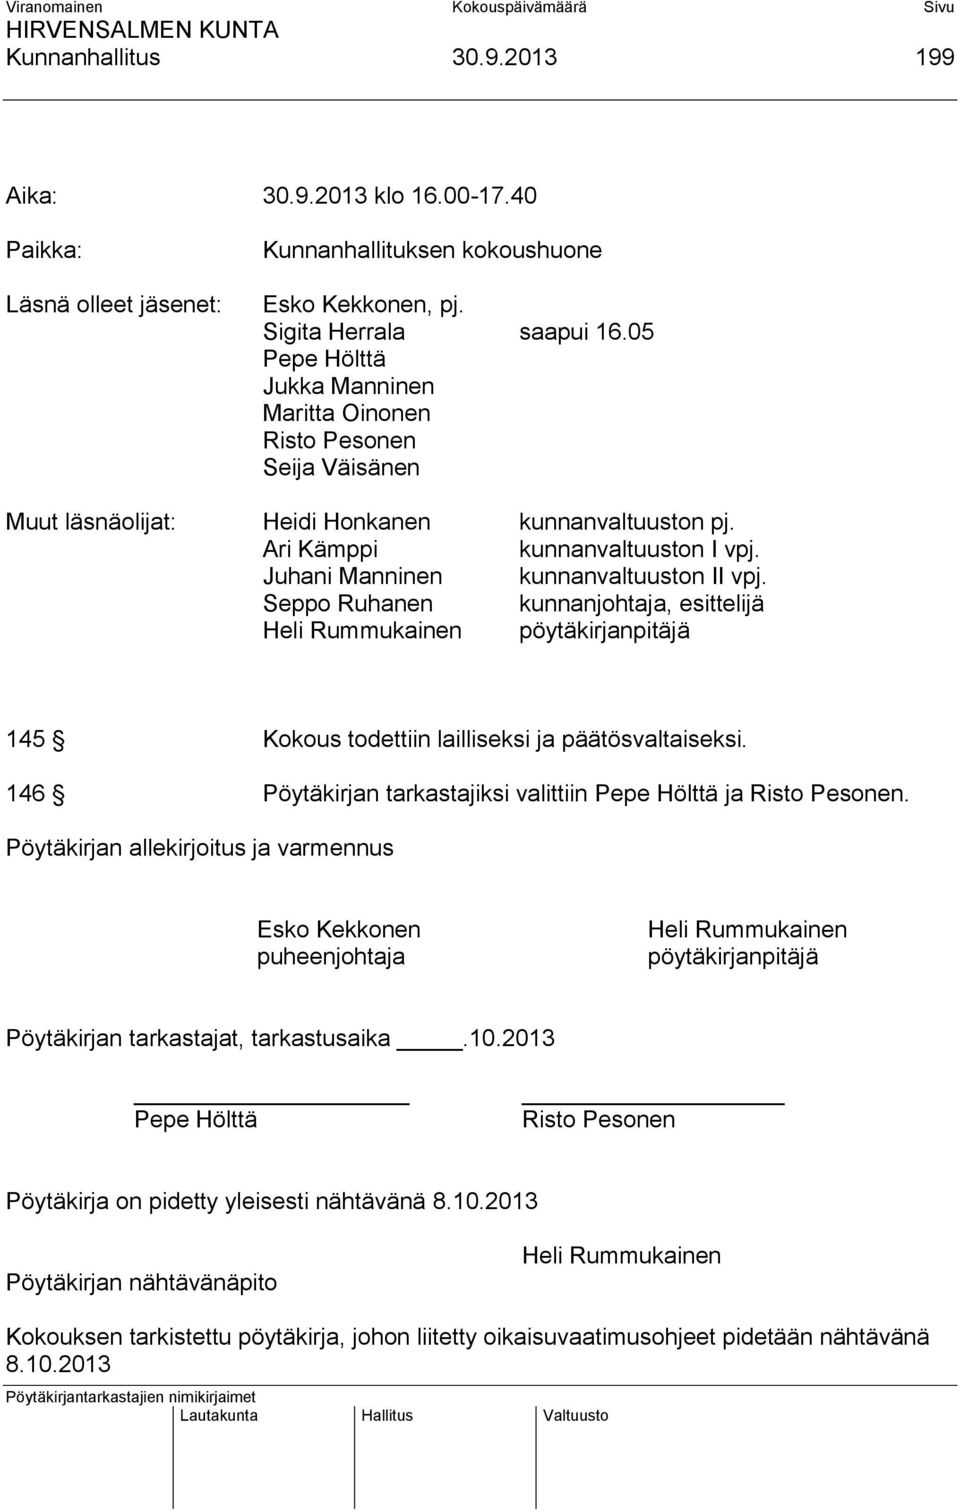 Juhani Manninen kunnanvaltuuston II vpj. Seppo Ruhanen kunnanjohtaja, esittelijä Heli Rummukainen pöytäkirjanpitäjä 145 Kokous todettiin lailliseksi ja päätösvaltaiseksi.